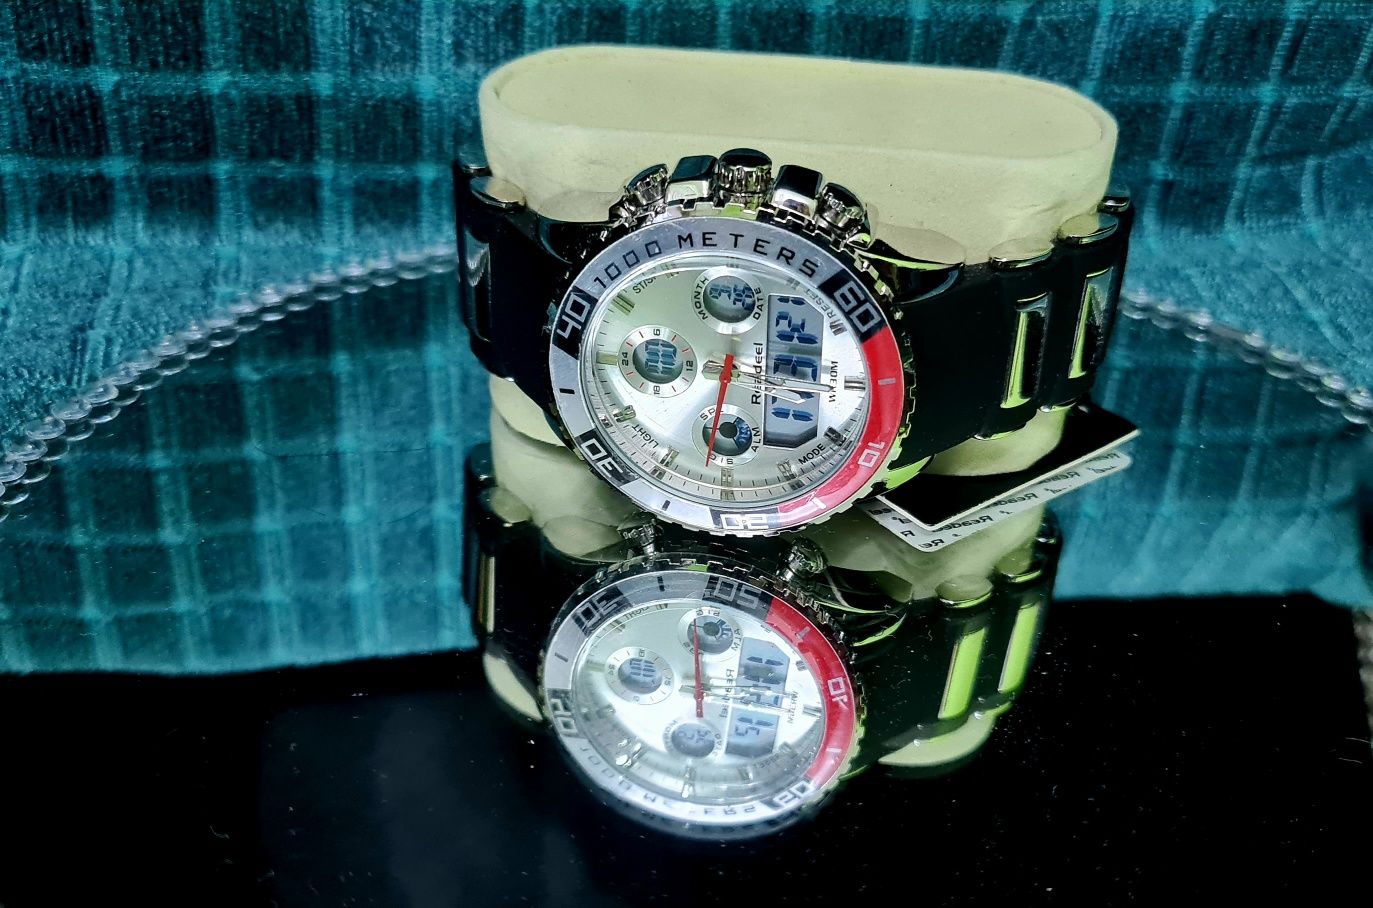 Zegarek firmy Readel